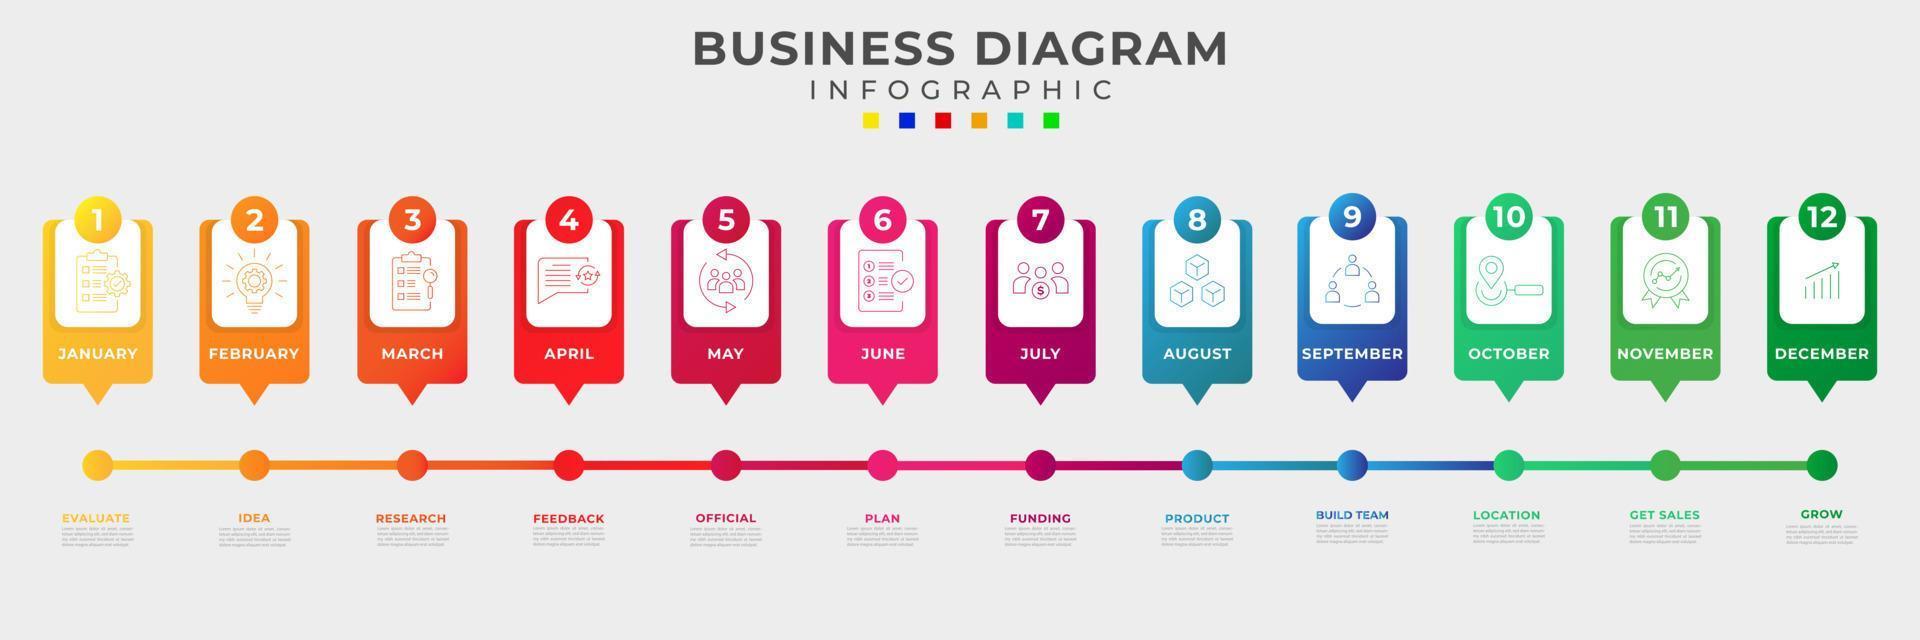 12 steg guide till startande en företag, tidslinje diagram infographic vektor